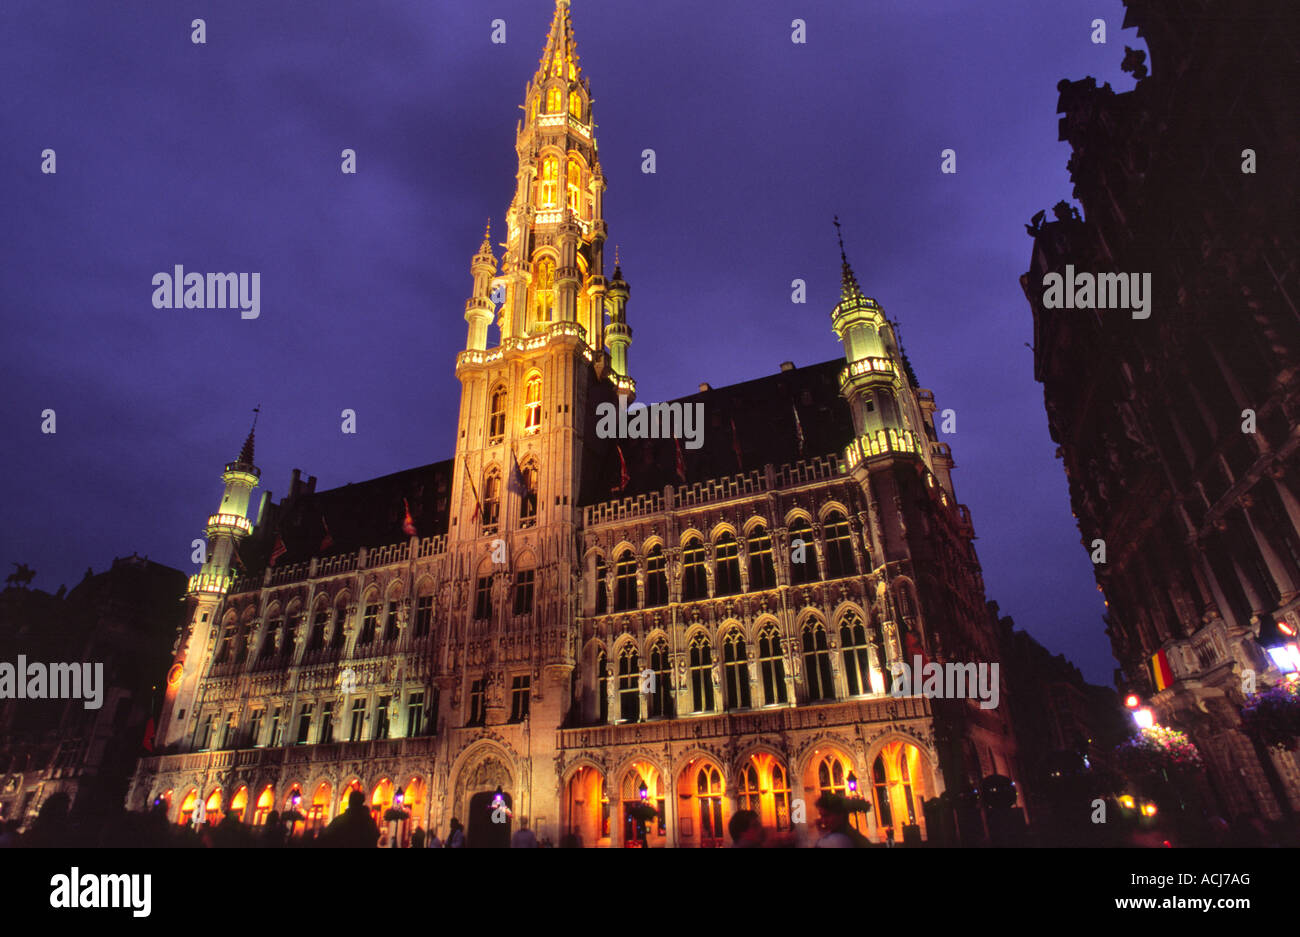 Bruxelles hôtel de ville illuminée au crépuscule, Grand Place, Bruxelles, Belgique. Banque D'Images